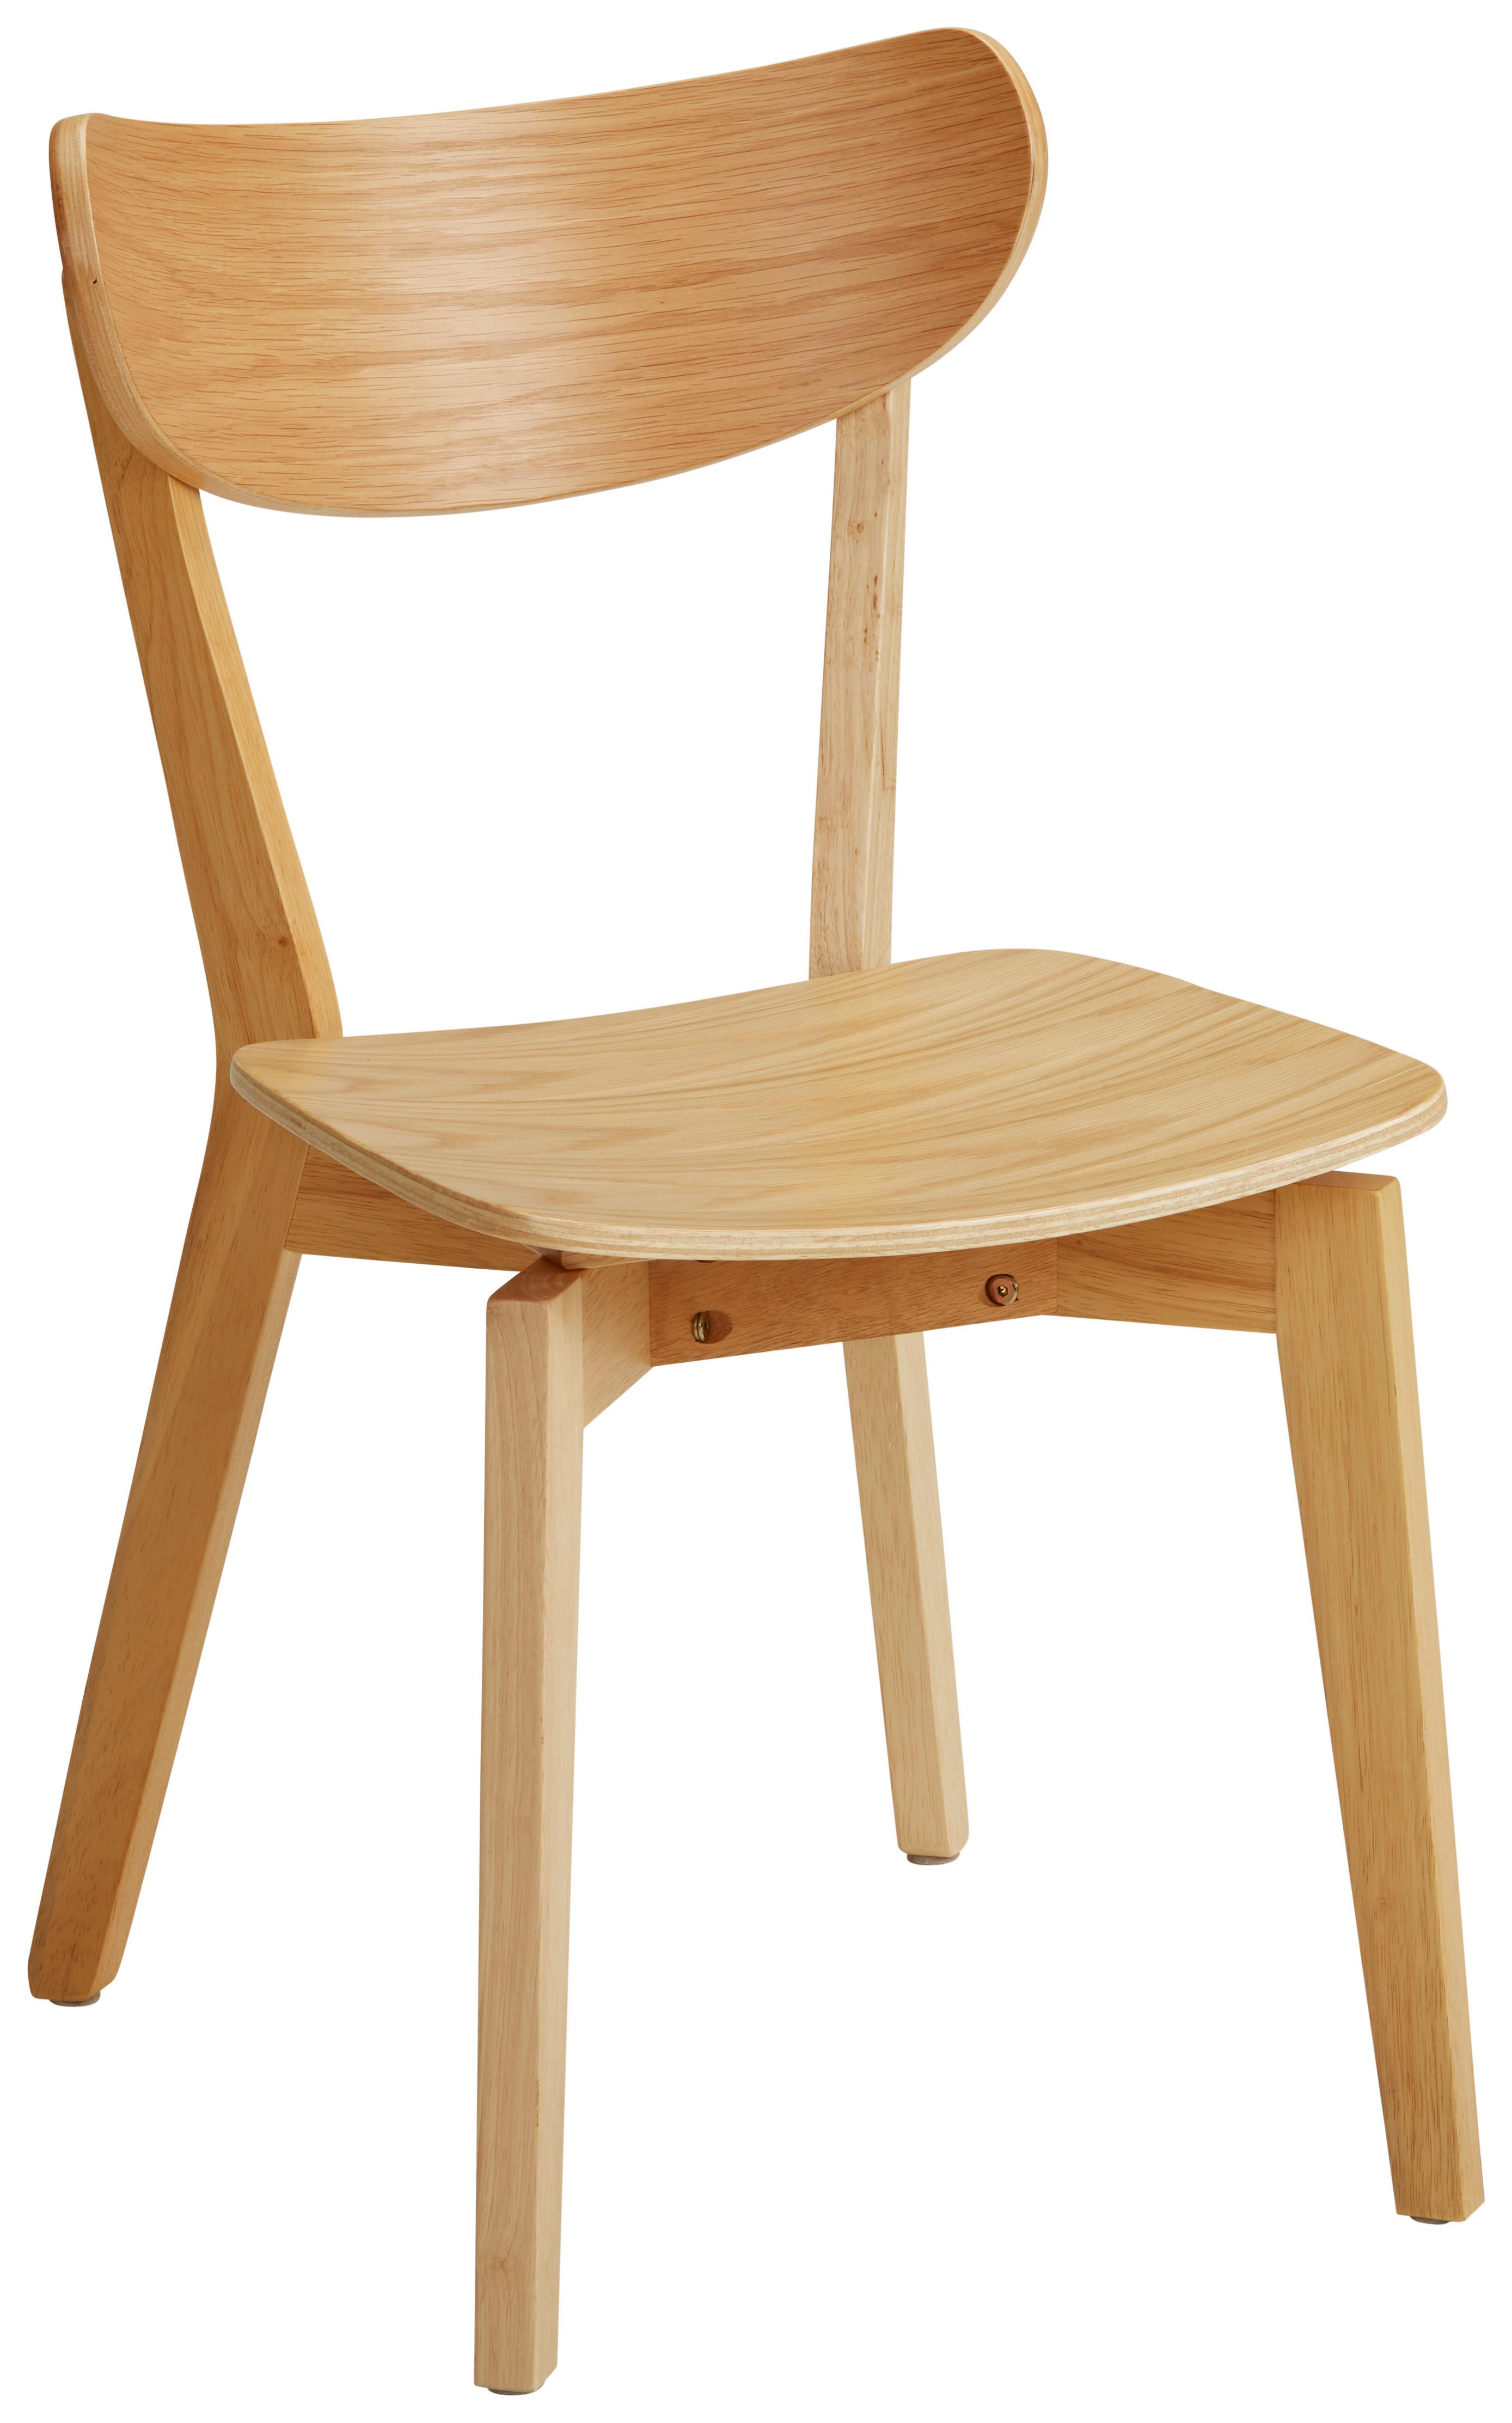 Jídelní Židle Roxby Dub Morený - barvy dubu, Lifestyle, dřevo (45/78/55cm) - Modern Living